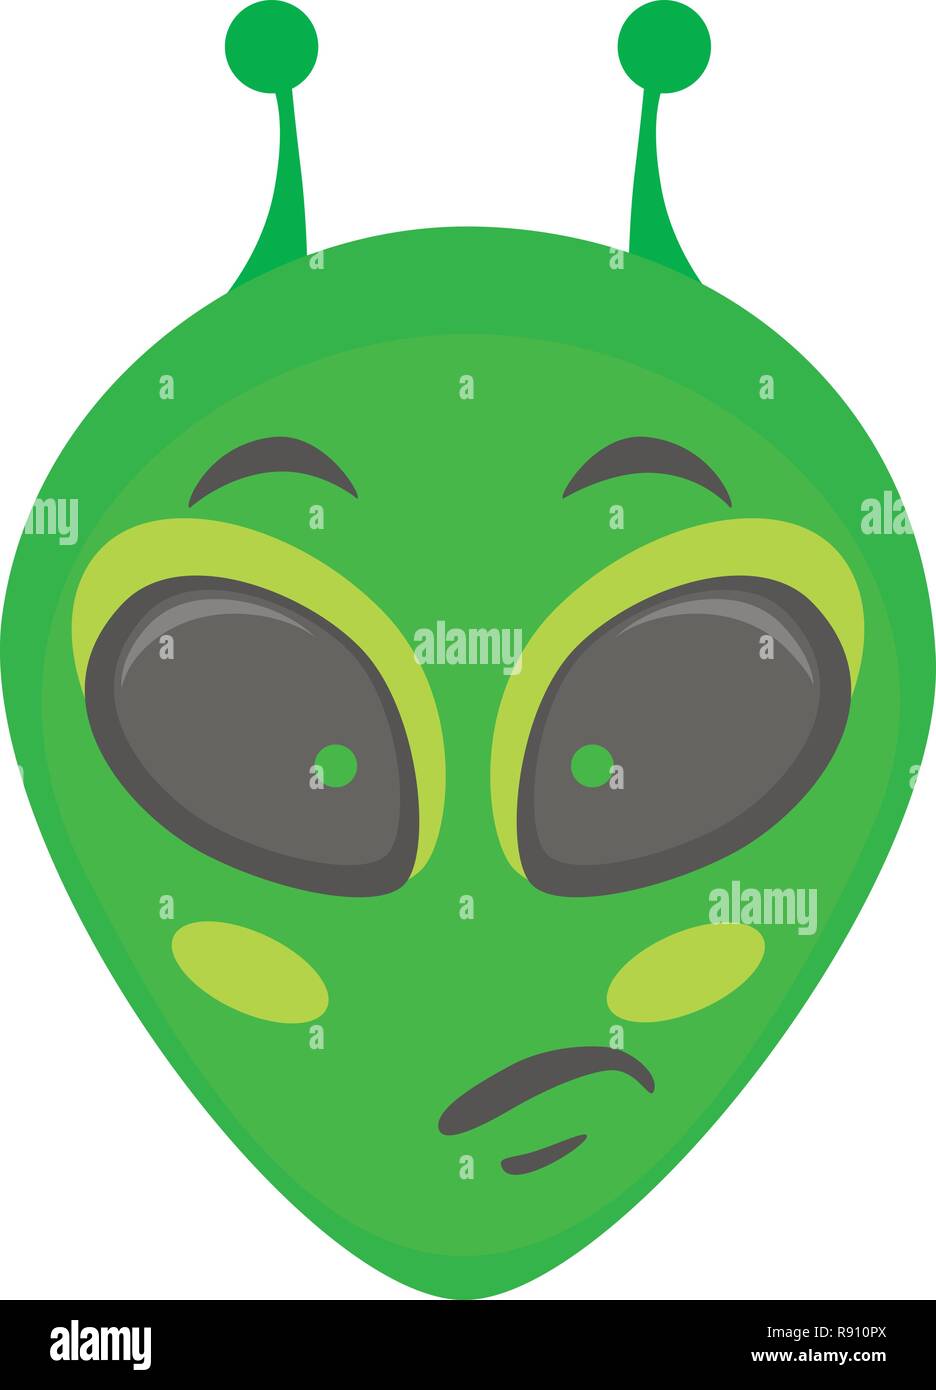 Alien Gesicht emoji. Alien grüne Kopf - nachdenklich. Humanoide Vector Illustration Stock Vektor